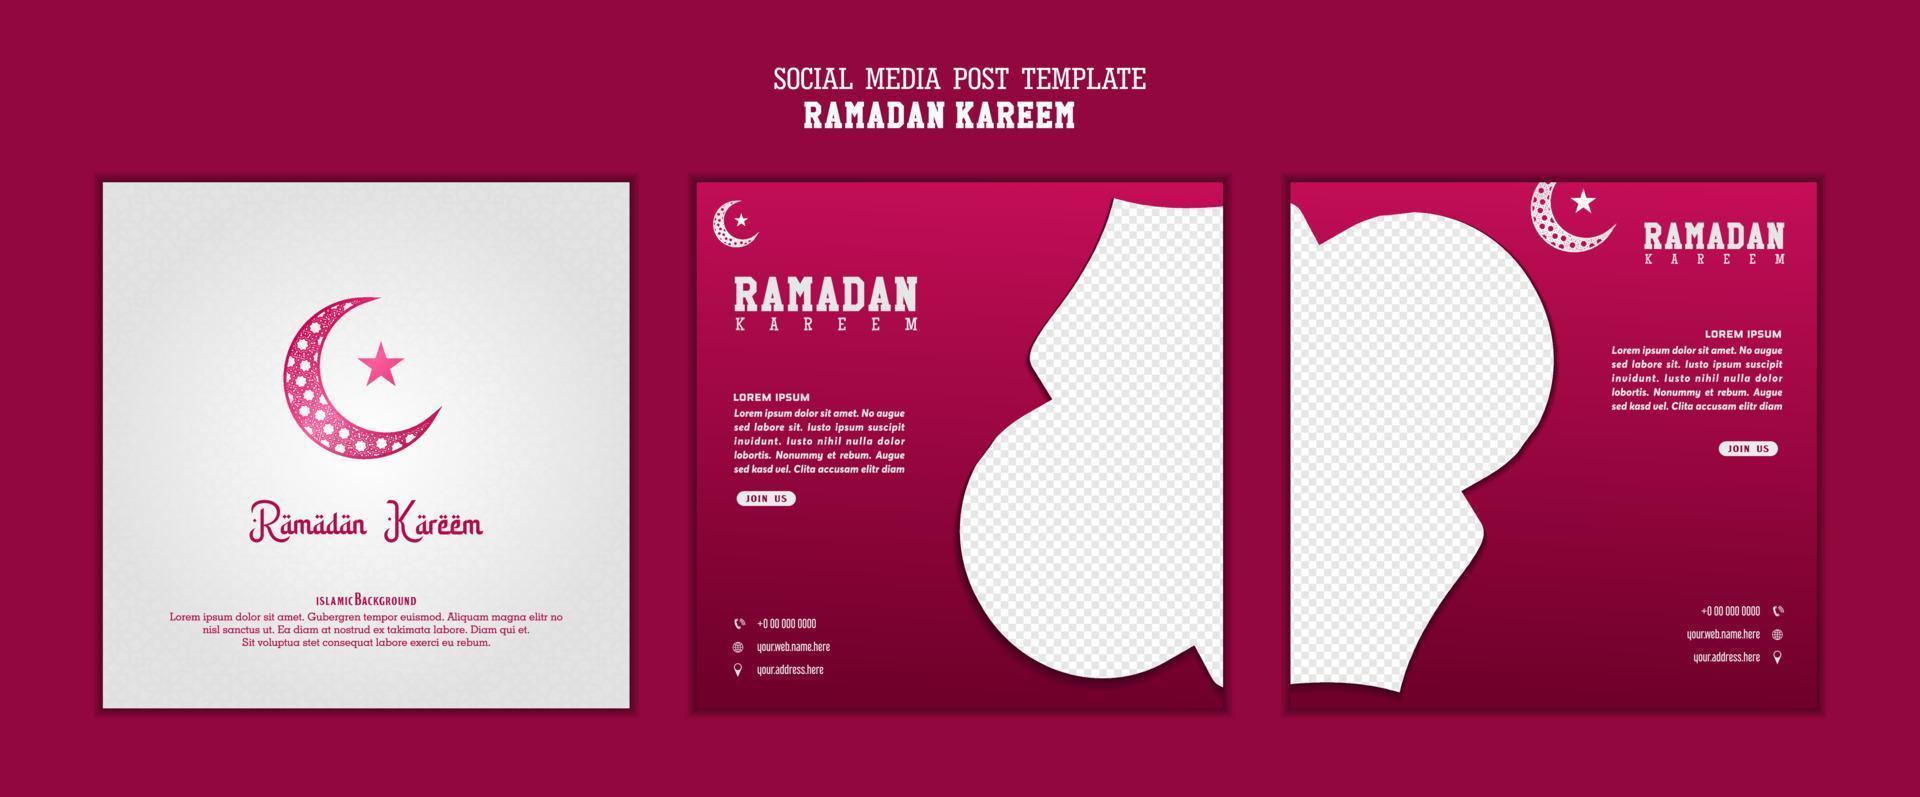 Satz quadratischer Social-Media-Beitragsvorlagen in Rot, Weiß mit Monddesign. gute vorlage für islamisches feierdesign. vektor